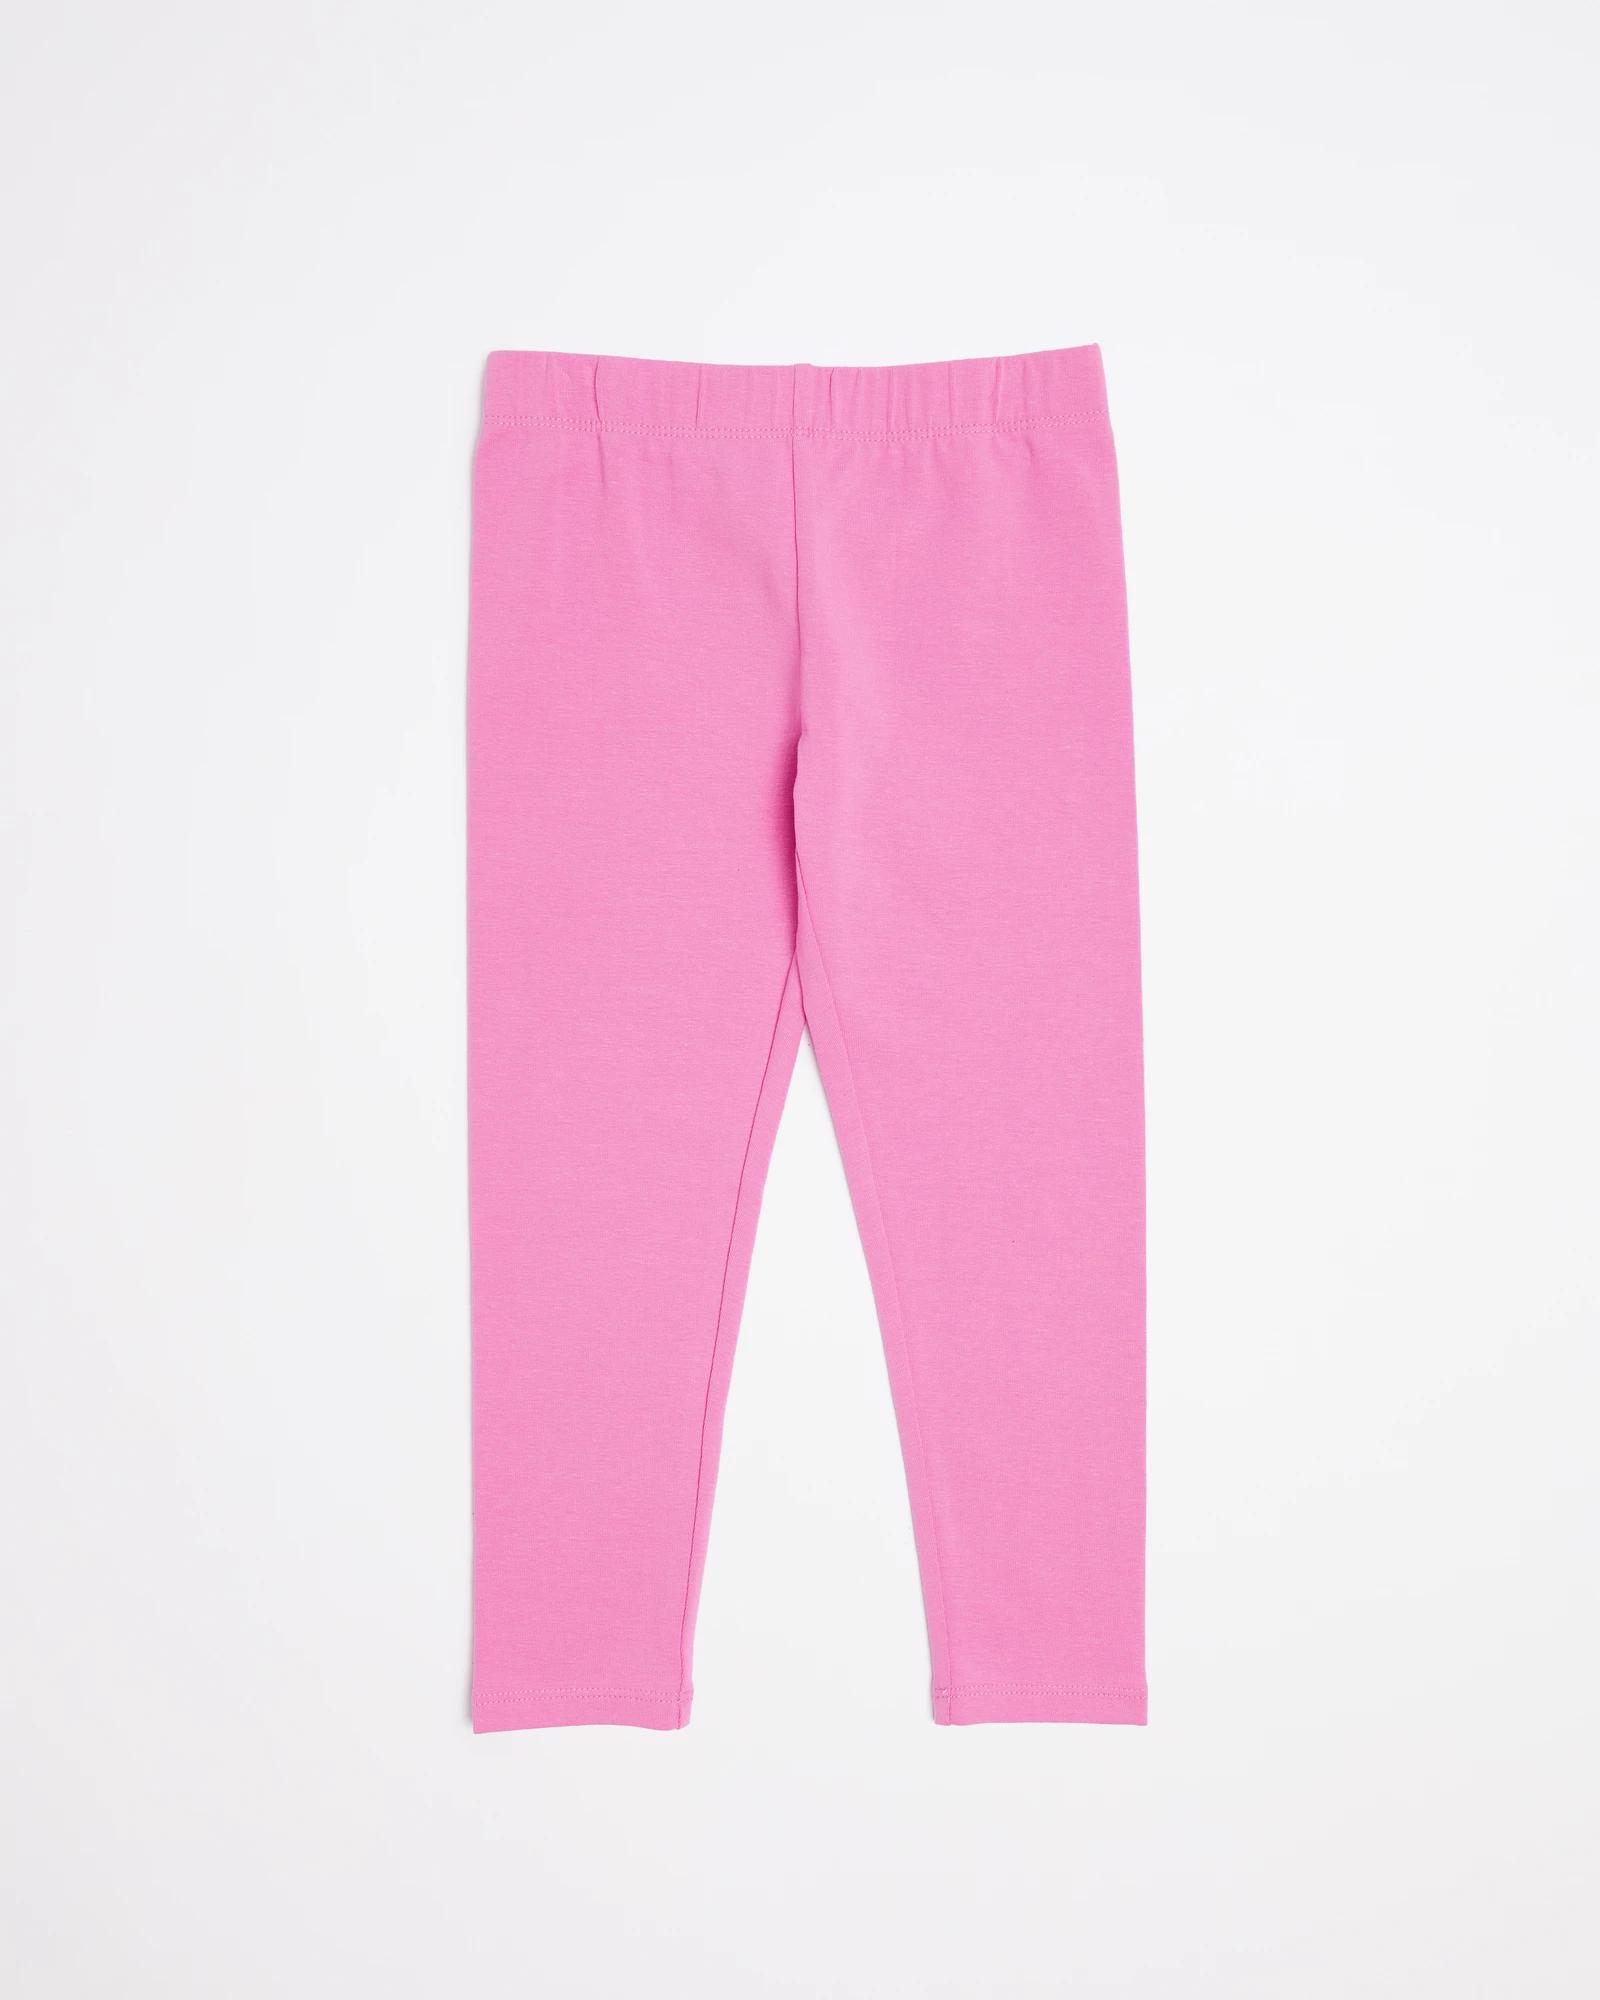 Hot Pink Leggings : Target